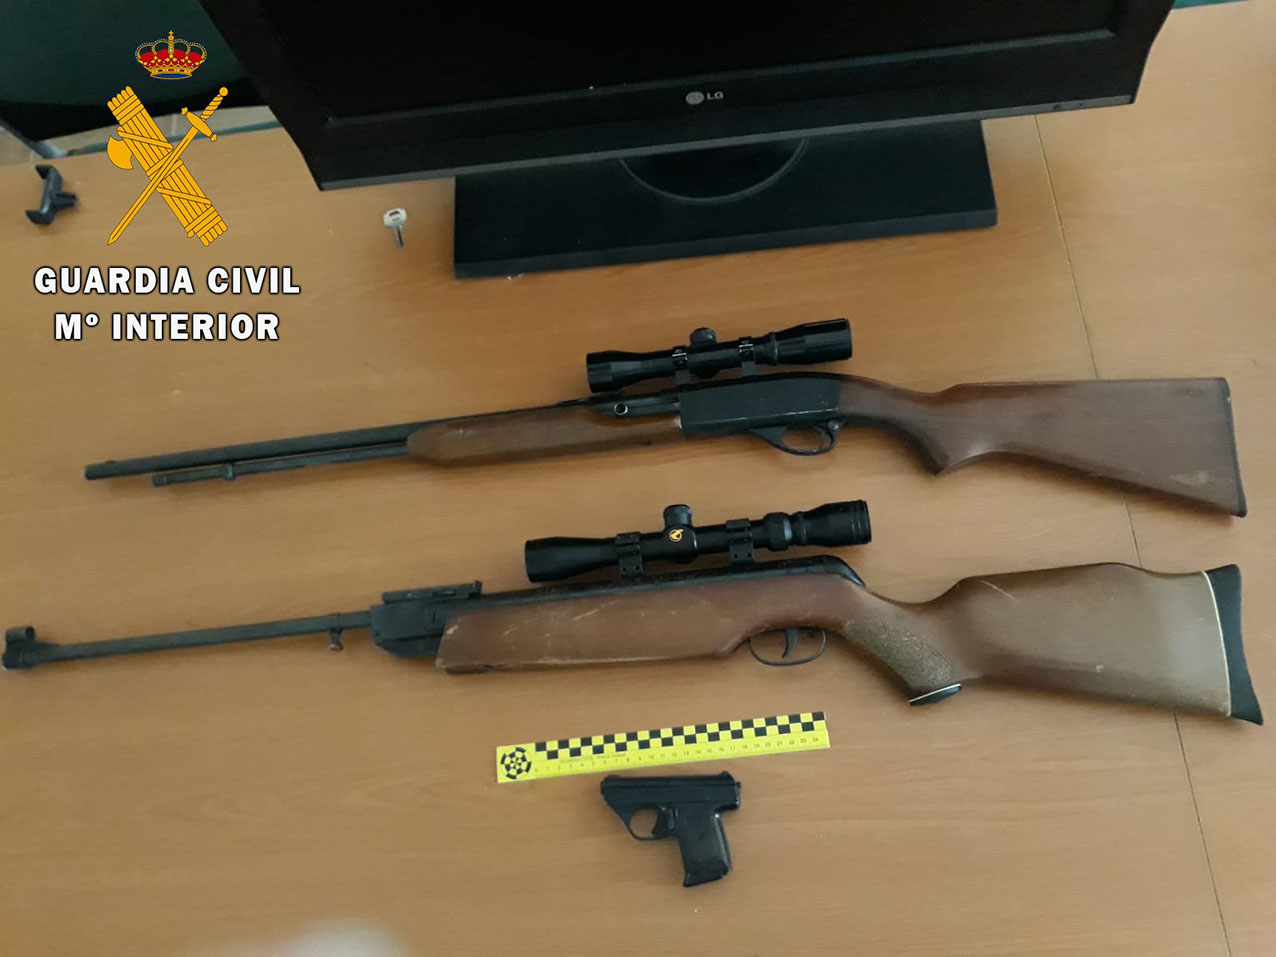 Algunas de las armas robadas y que incautaron en la vivienda de los dos detenidos.